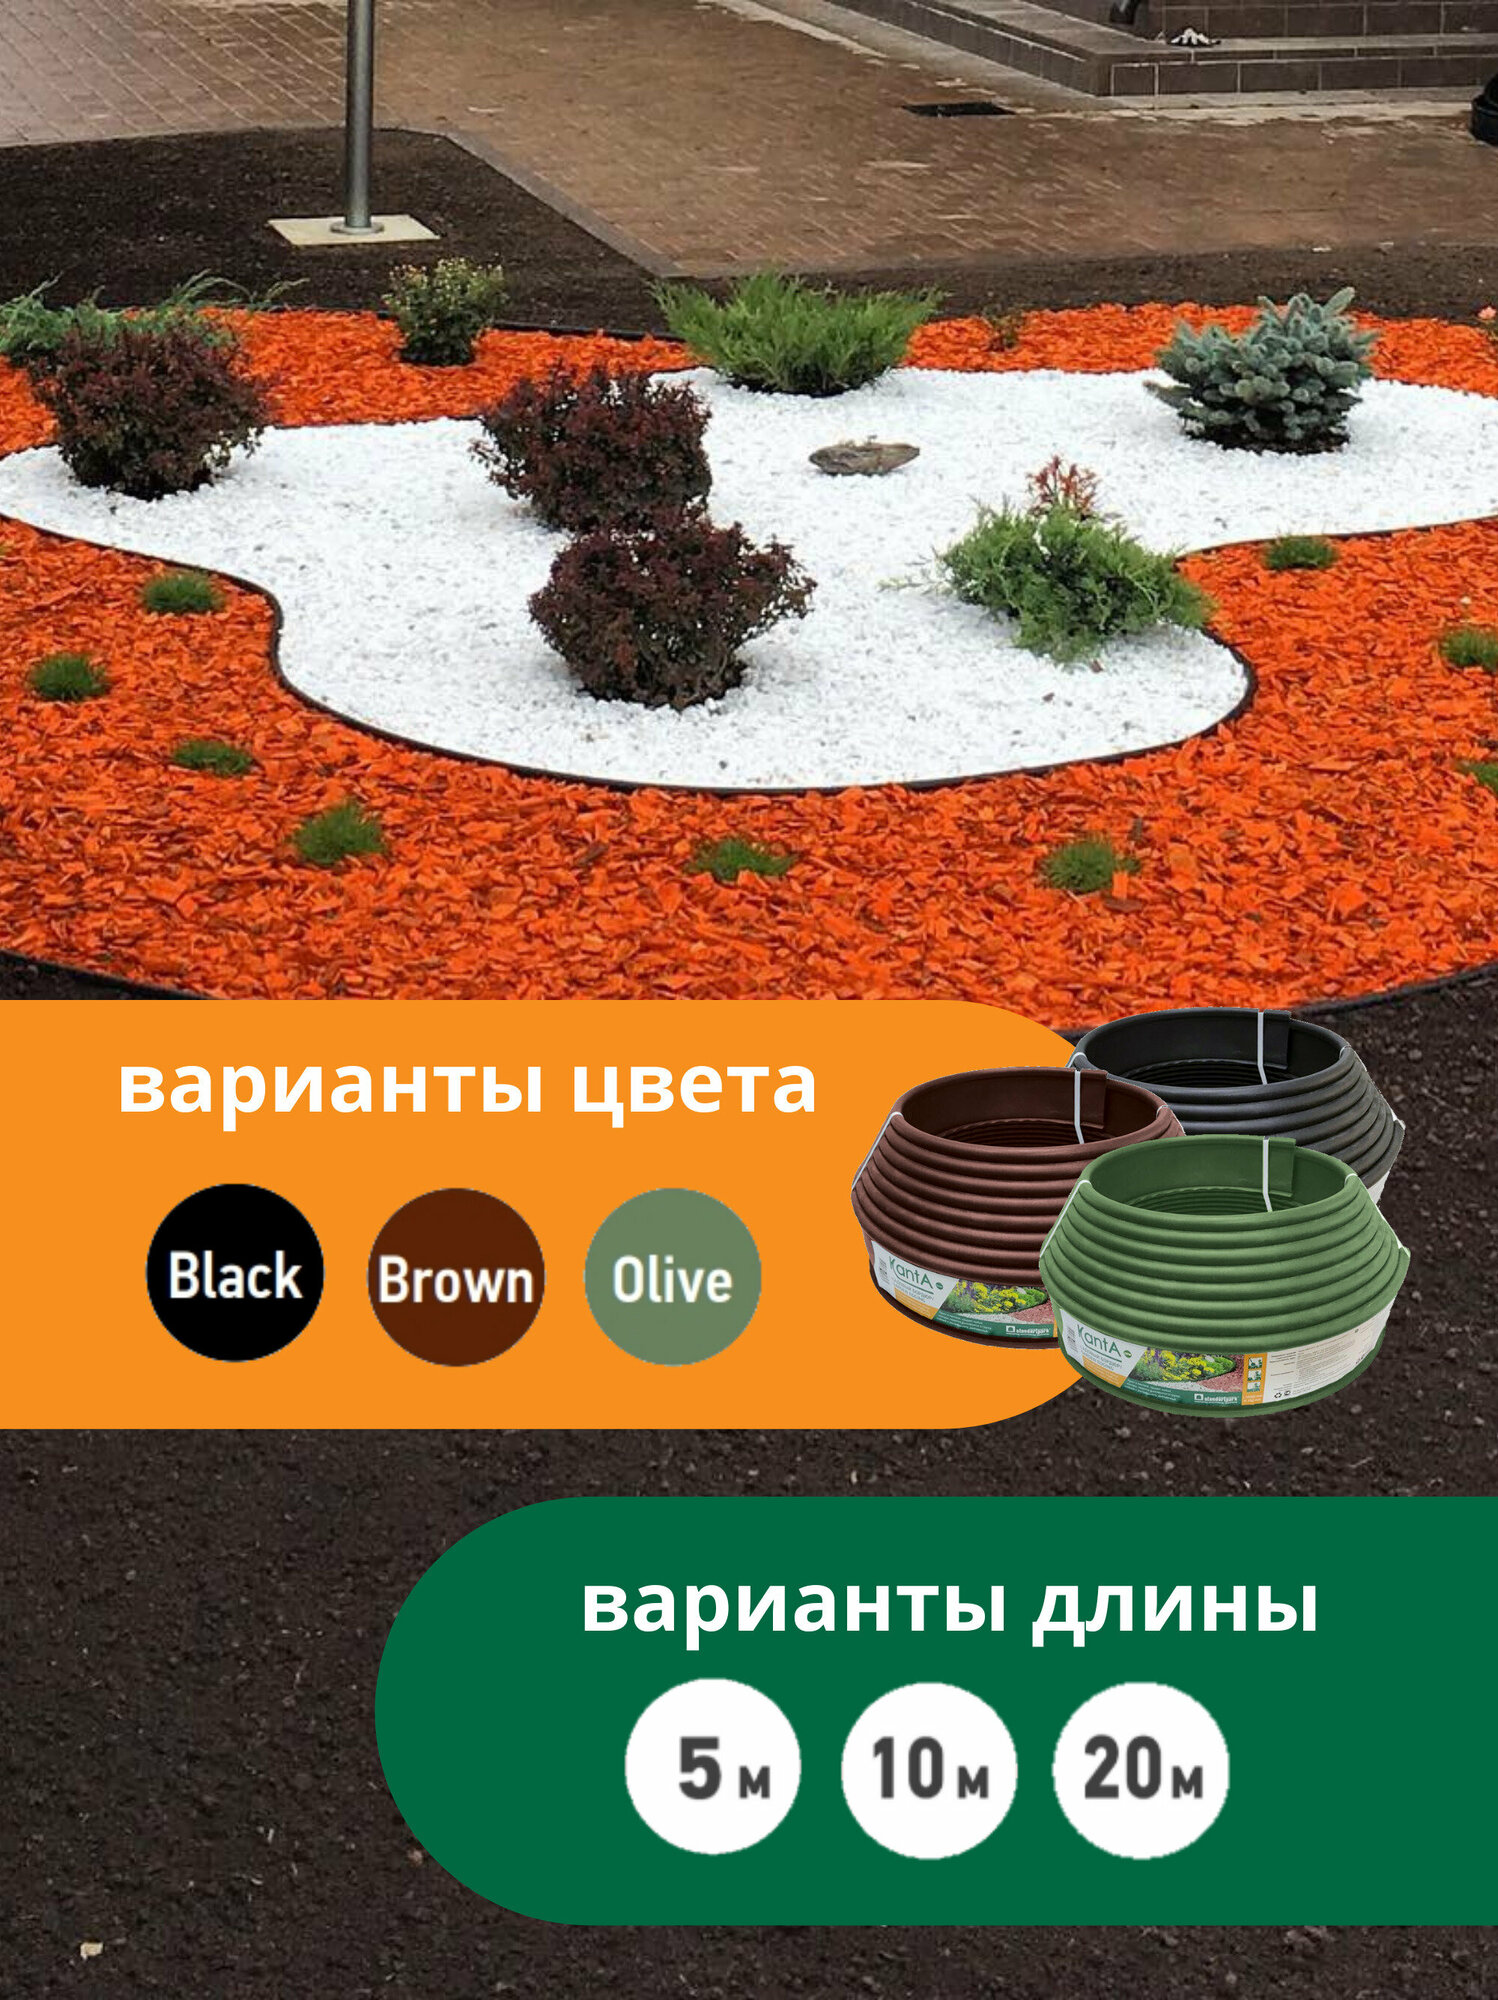 Бордюр садовый Стандартпарк Канта (Standartpark KANTA), черный, длина 20 м, высота 10 см, диаметр трубки 1,6 см